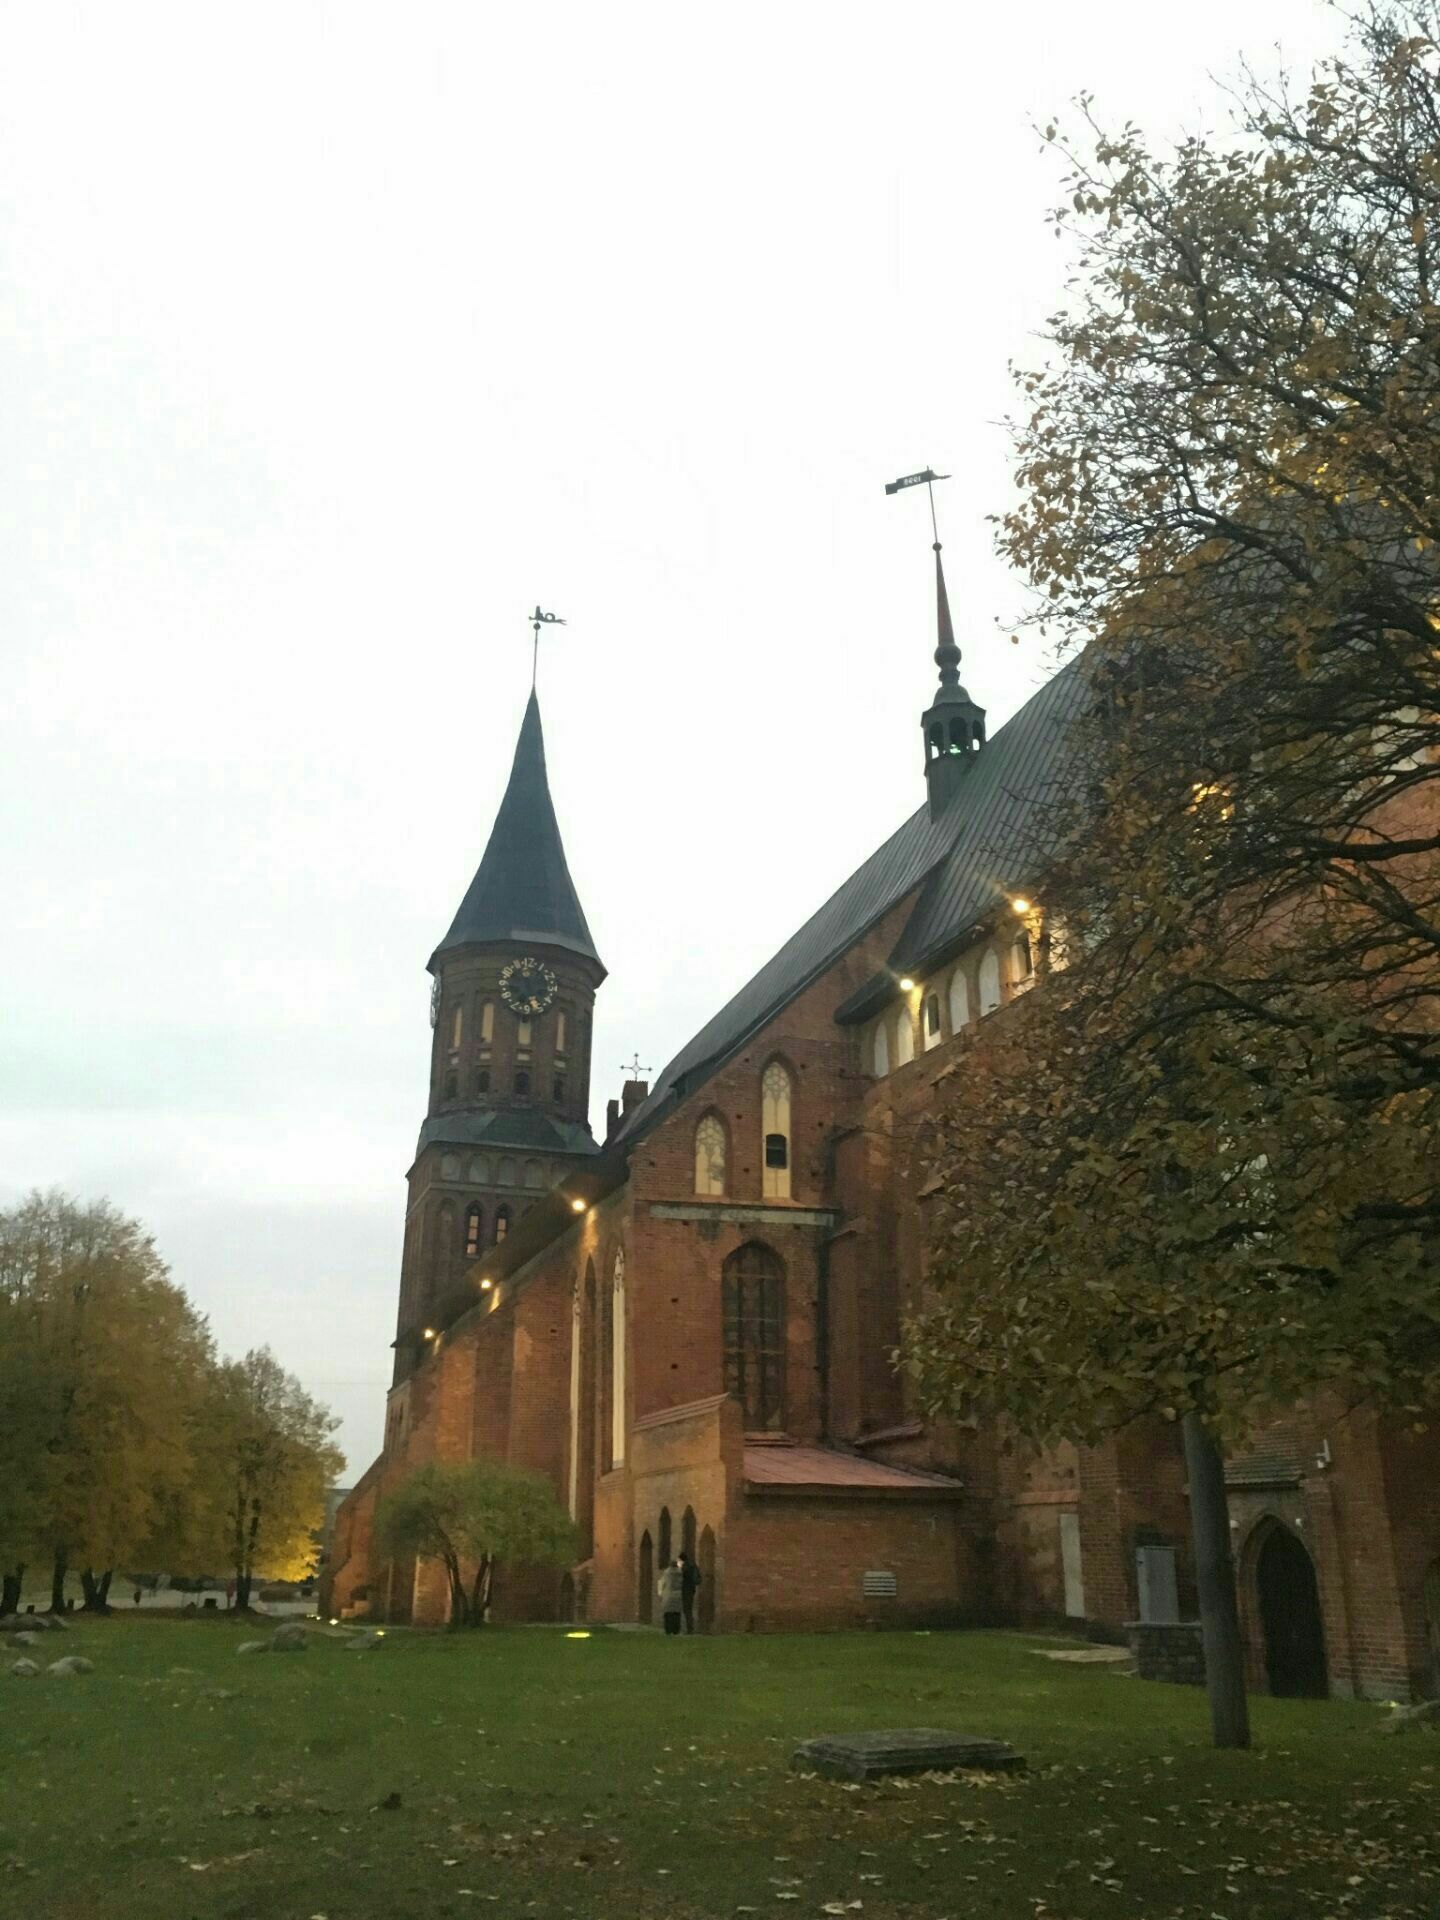 柯尼斯堡大教堂(康德博物馆)